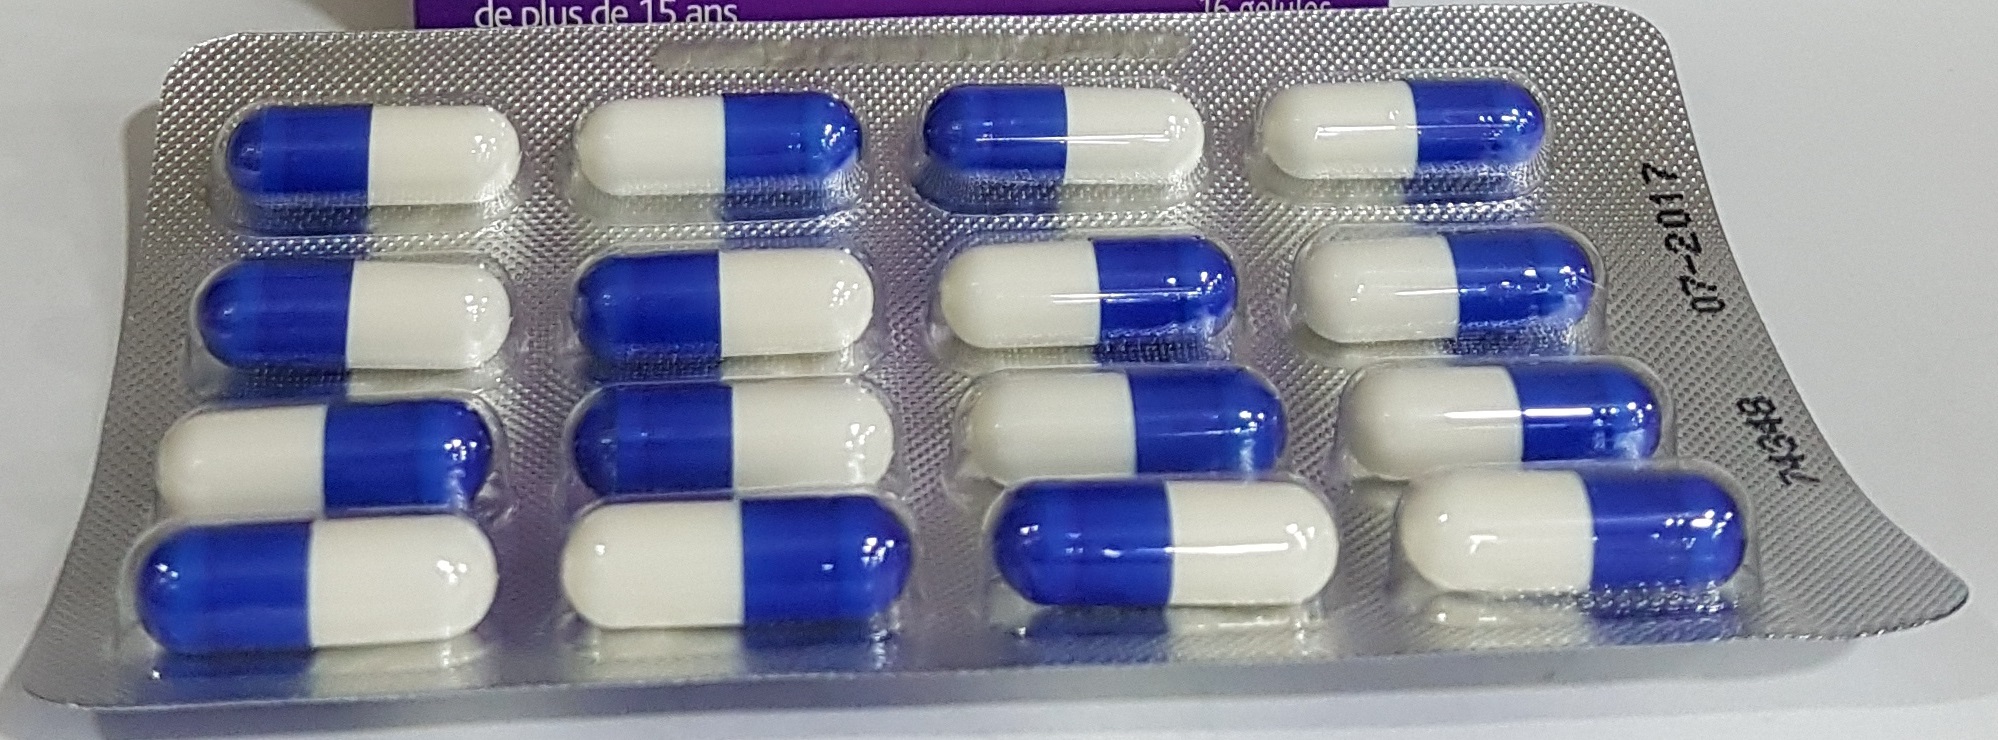 HumexLib Paracetamol Chlorpheniramine